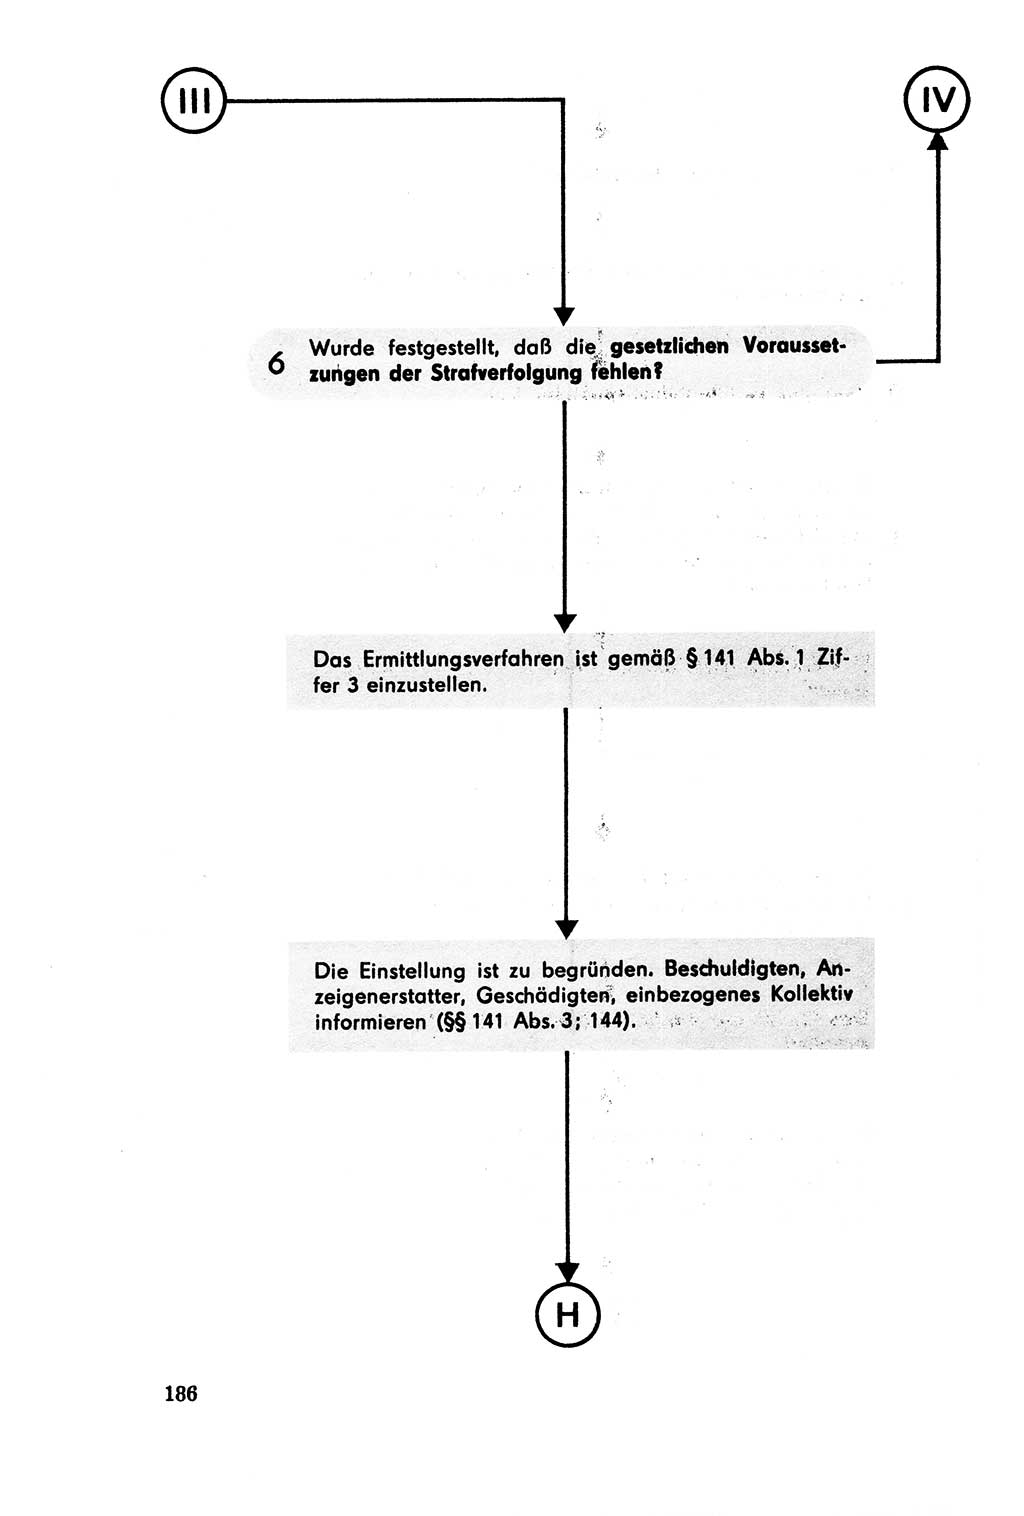 Der Abschluß des Ermittlungsverfahrens [Deutsche Demokratische Republik (DDR)] 1978, Seite 186 (Abschl. EV DDR 1978, S. 186)